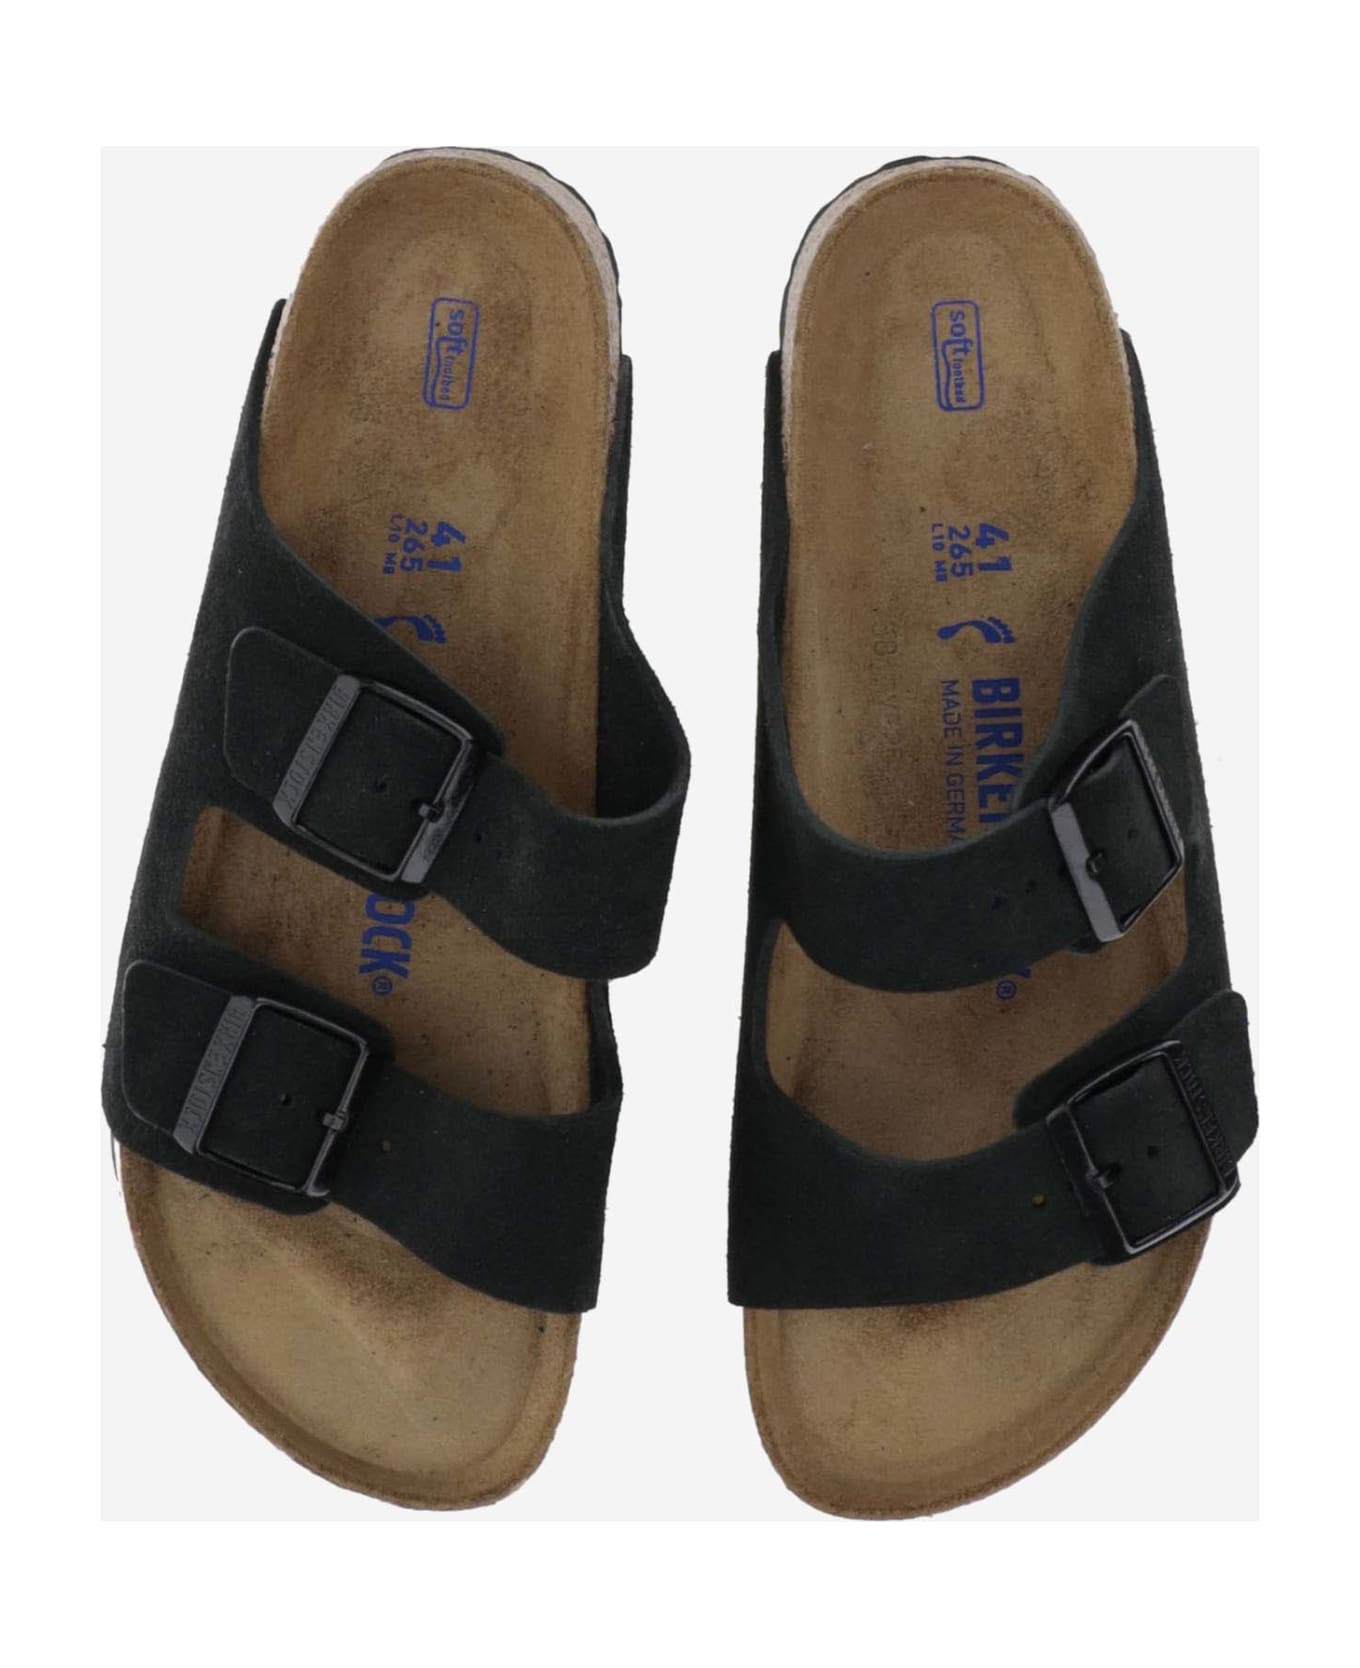 Birkenstock Arizona Suede Sandals - Black